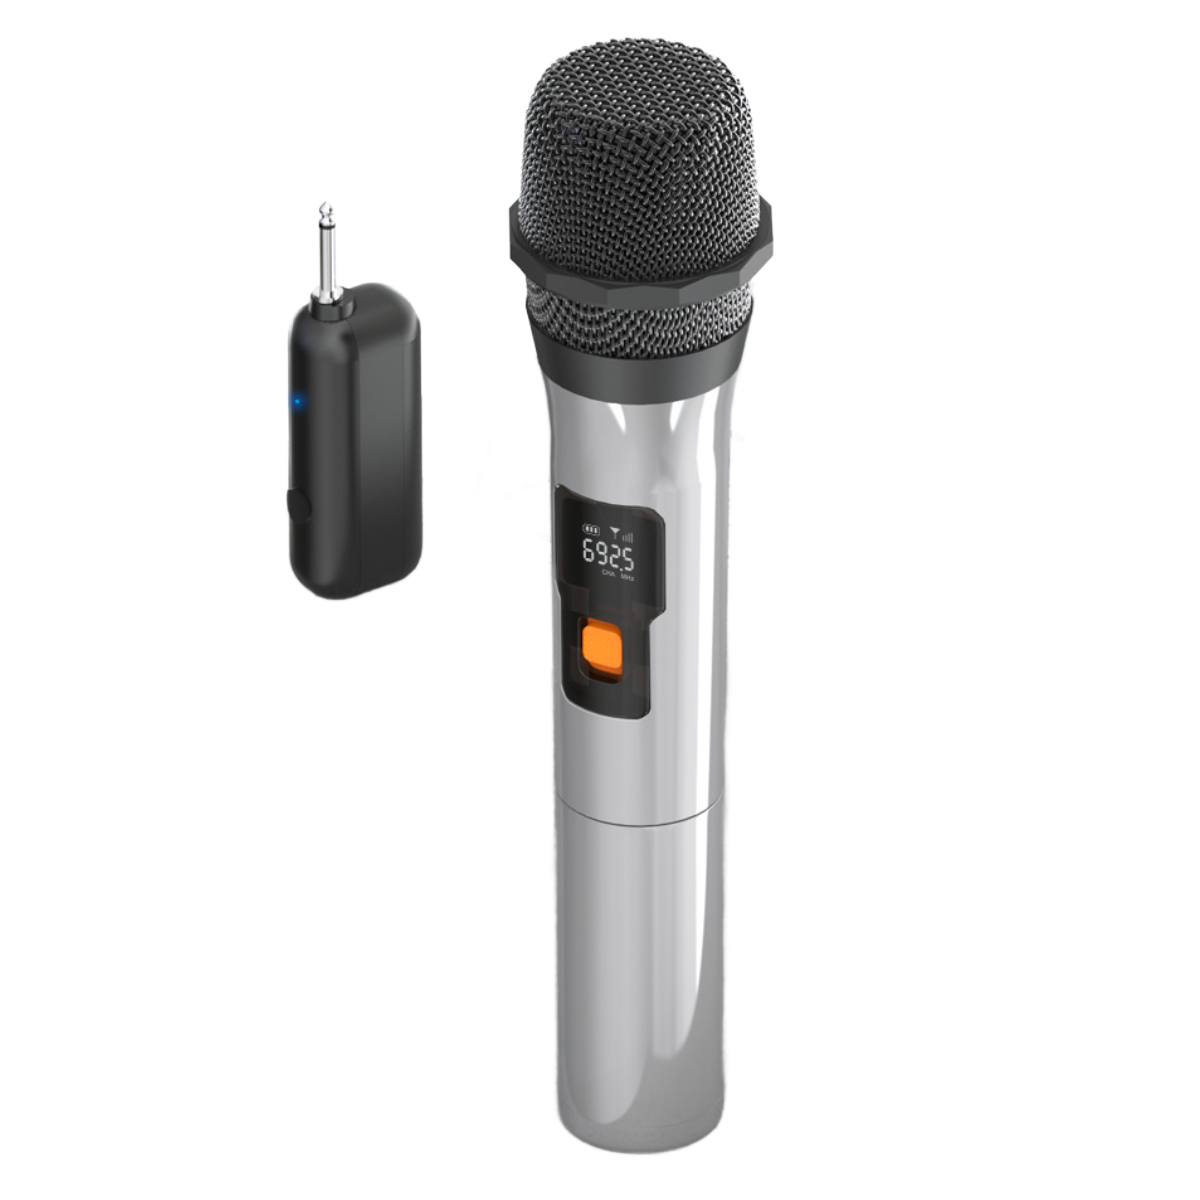 geeignet Silber Mikrofon, Handmikrofon: und viele Drahtloses Klangqualität für UWOT geräuscharm Gelegenheiten, hoher mit